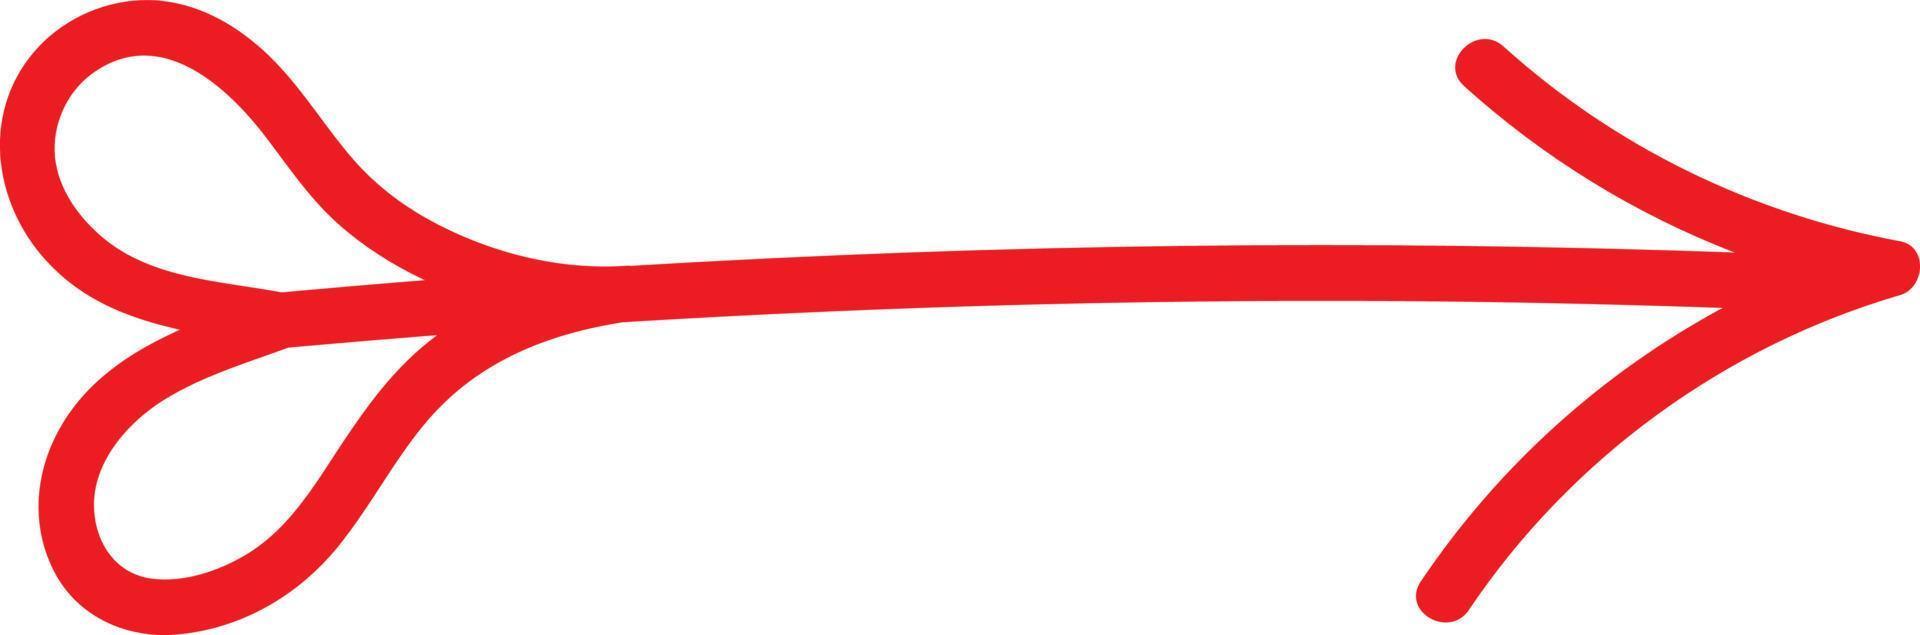 röd pil med en hjärta formad svans spetsig till de höger, illustration, vektor på vit bakgrund.